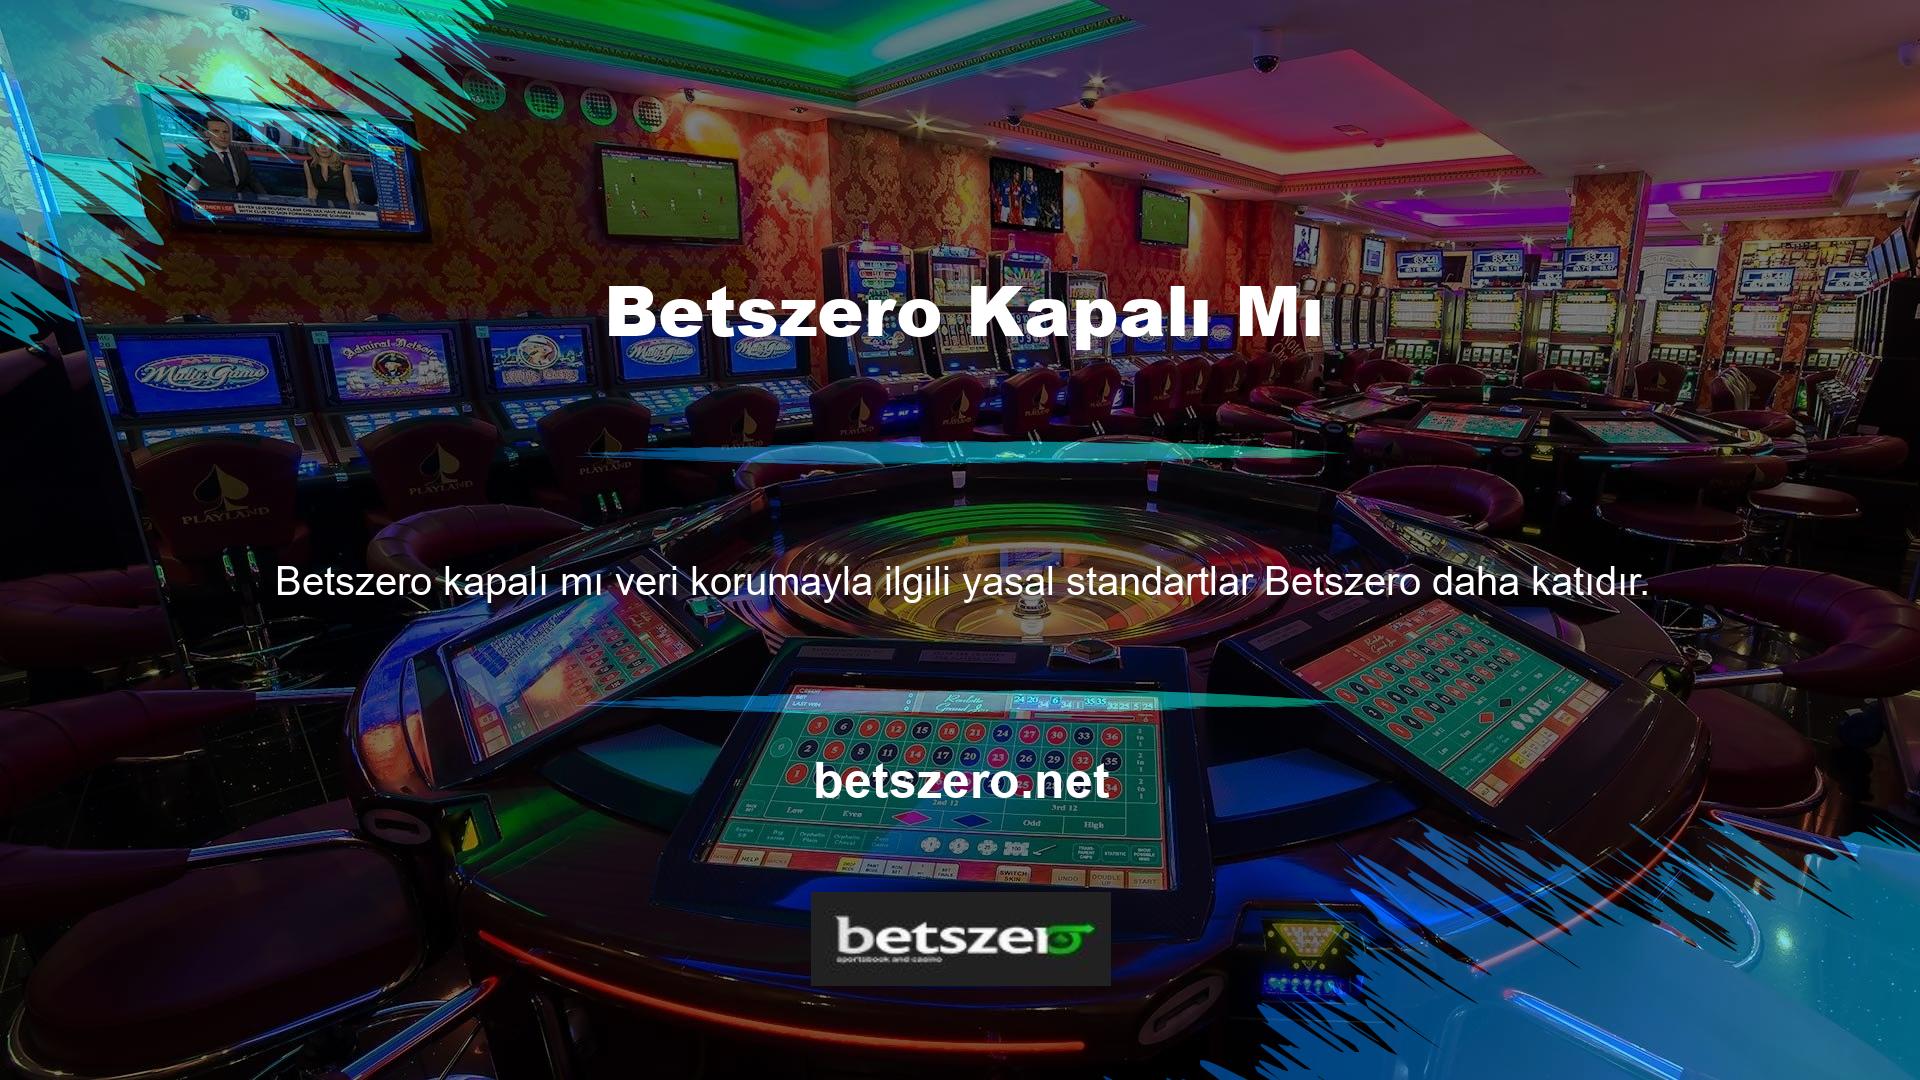 Betszero yeni sitesine sorunsuz geçişi de gözlemlenmektedir